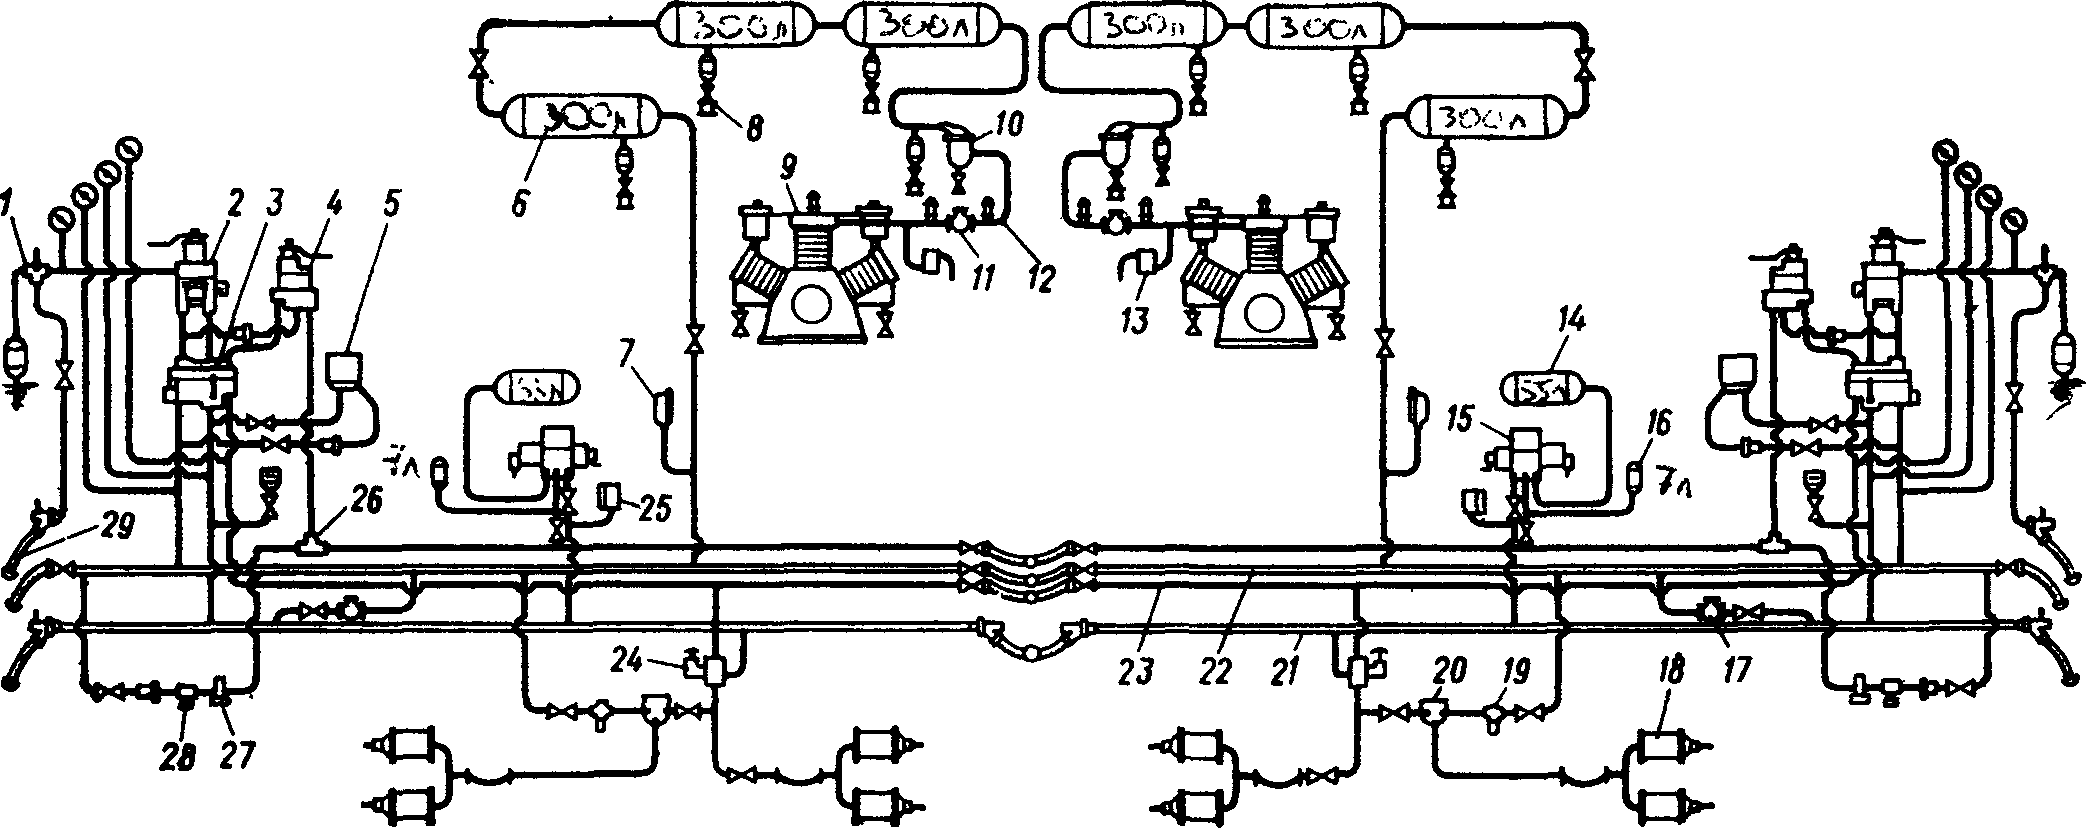 Схема тормозного оборудования электровоза ВЛ80